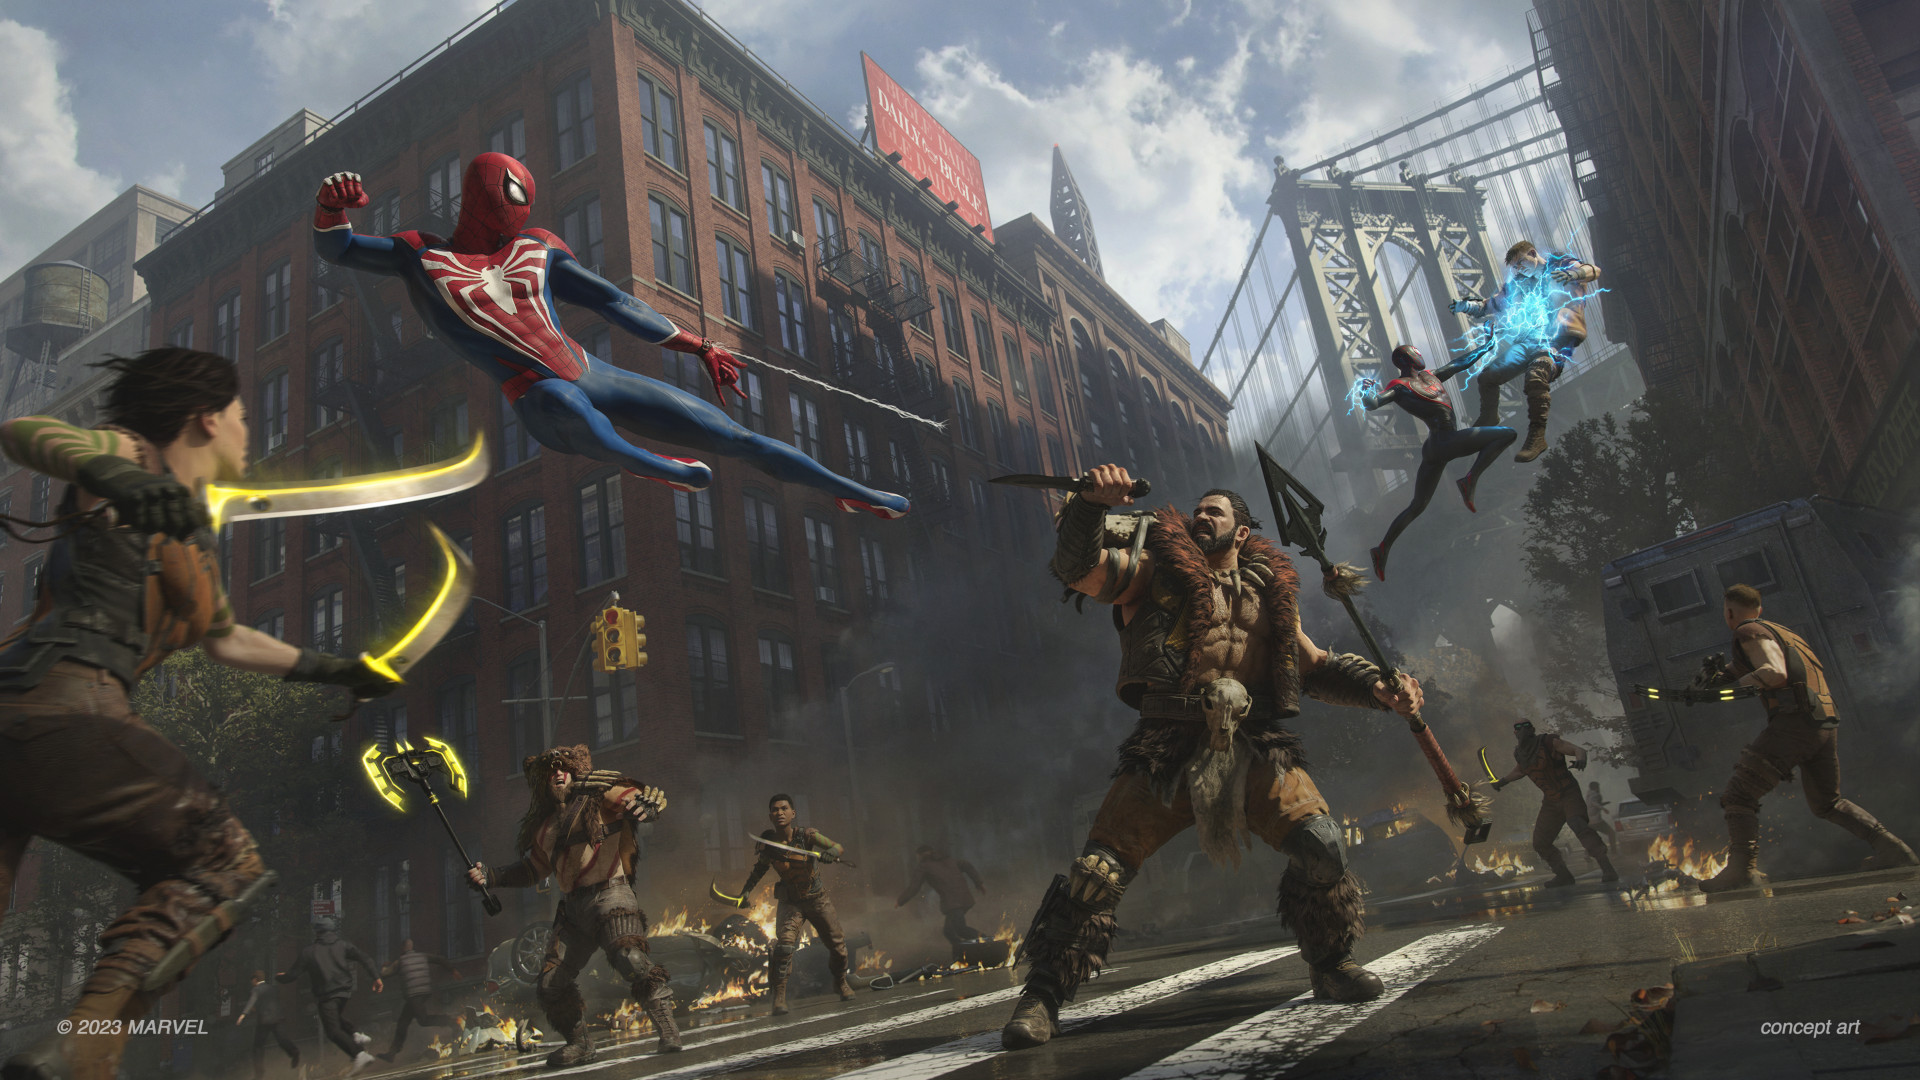 Marvel's Spider-Man 2 launches October 20 - Gematsu